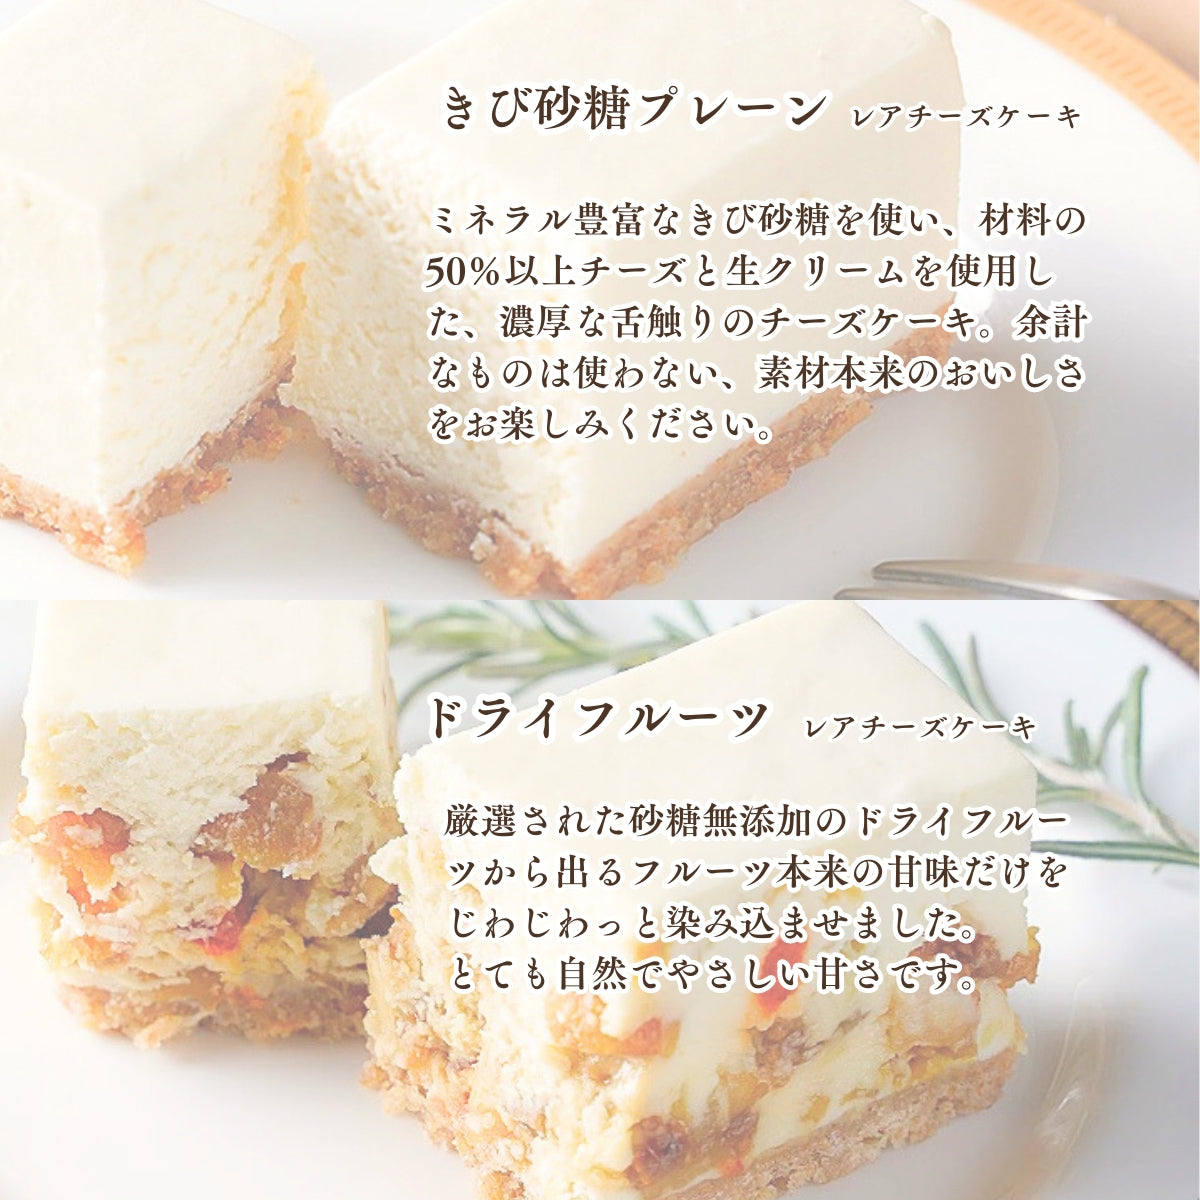 コガネイチーズケーキ6種アソートBOX 送料込